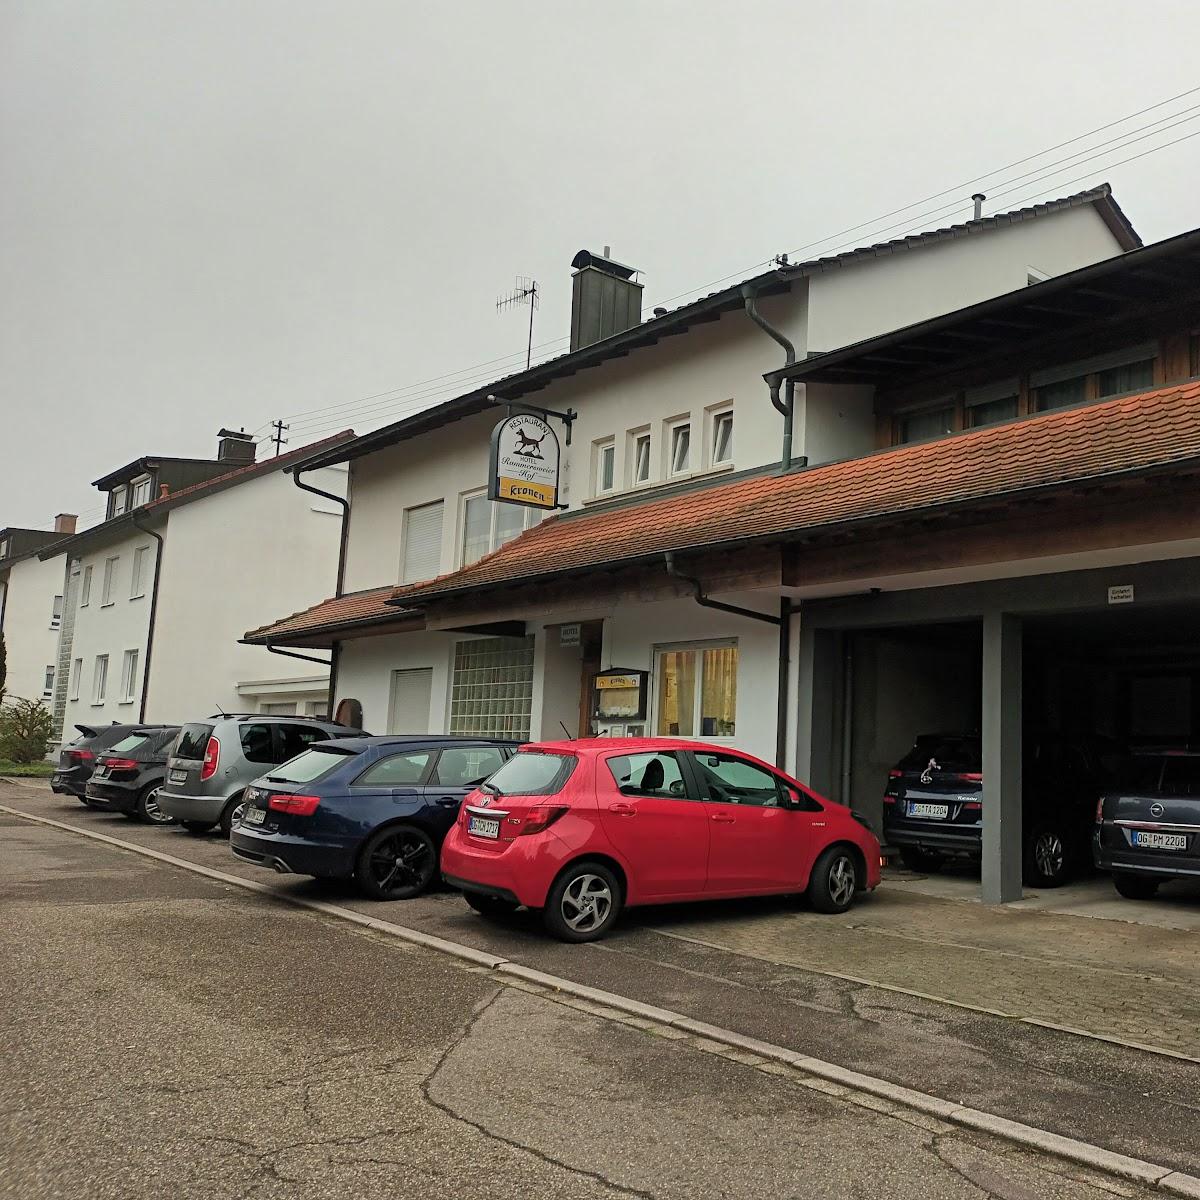 Restaurant "Rammersweier Hof" in Offenburg